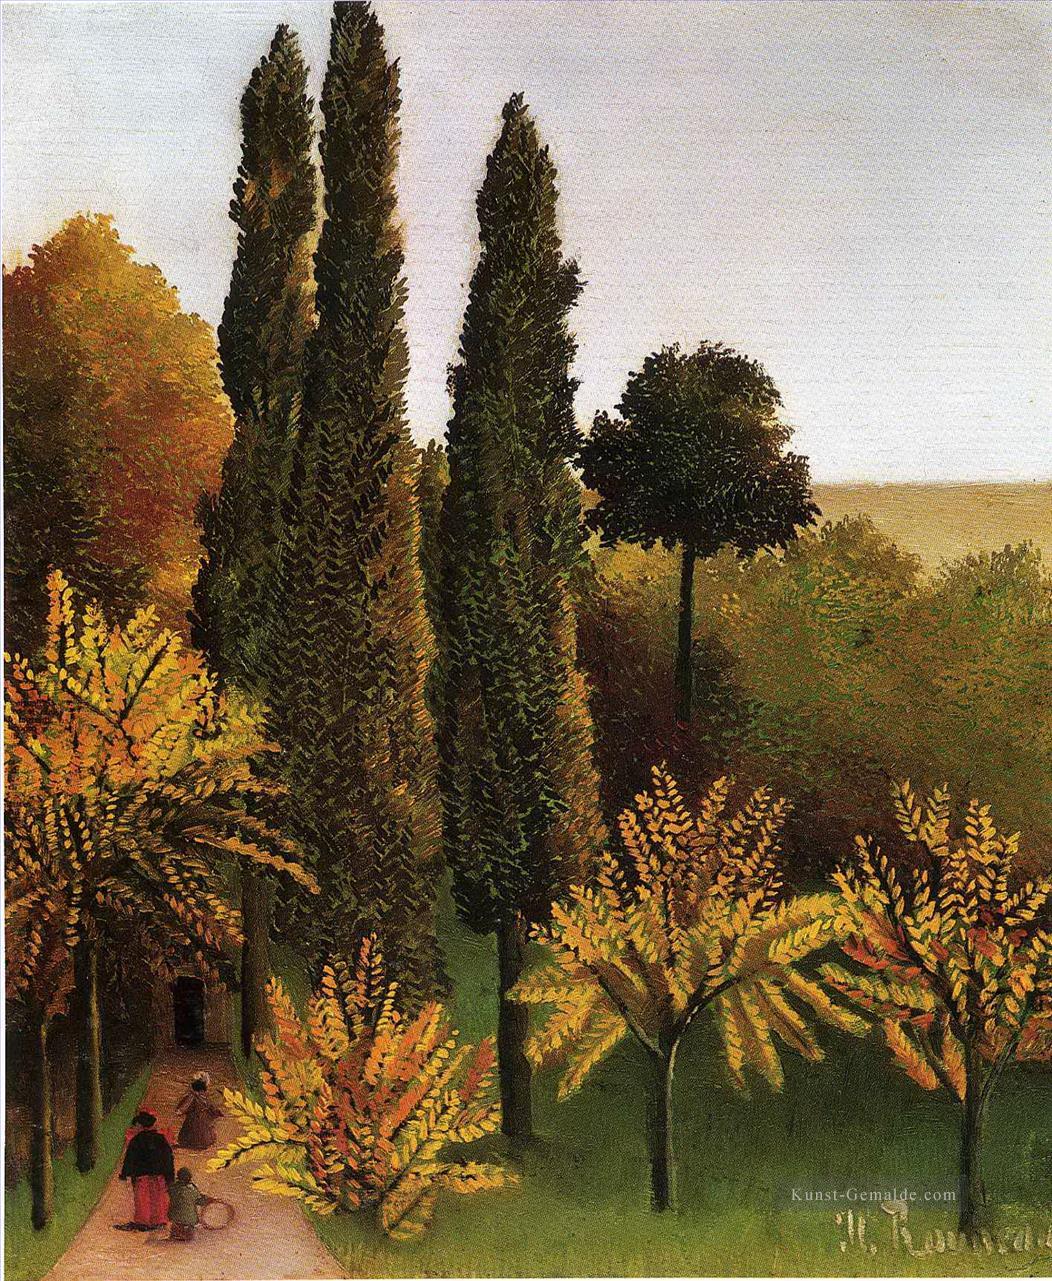 Spaziergang im Parc des buttes chaumont 1909 Henri Rousseau Post Impressionism Naive Primitivismus Ölgemälde